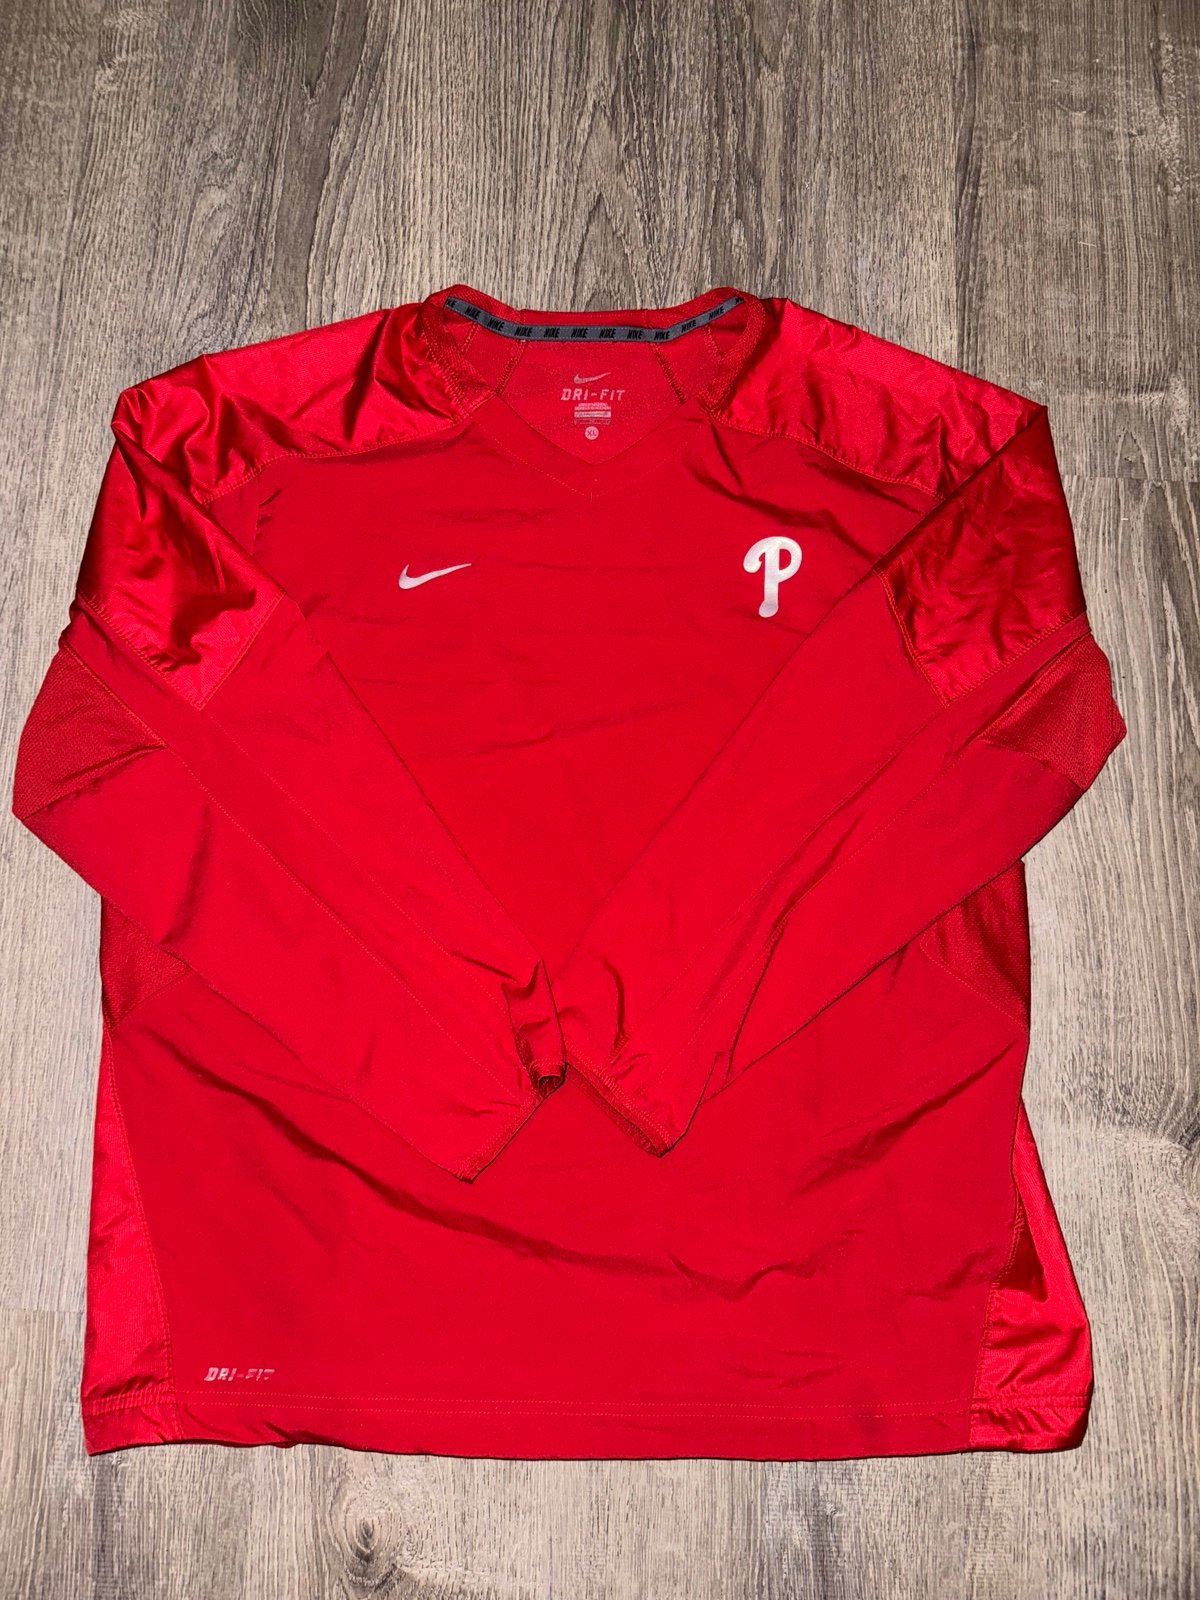 Phillies Nike Pullover Lkpb04iG2